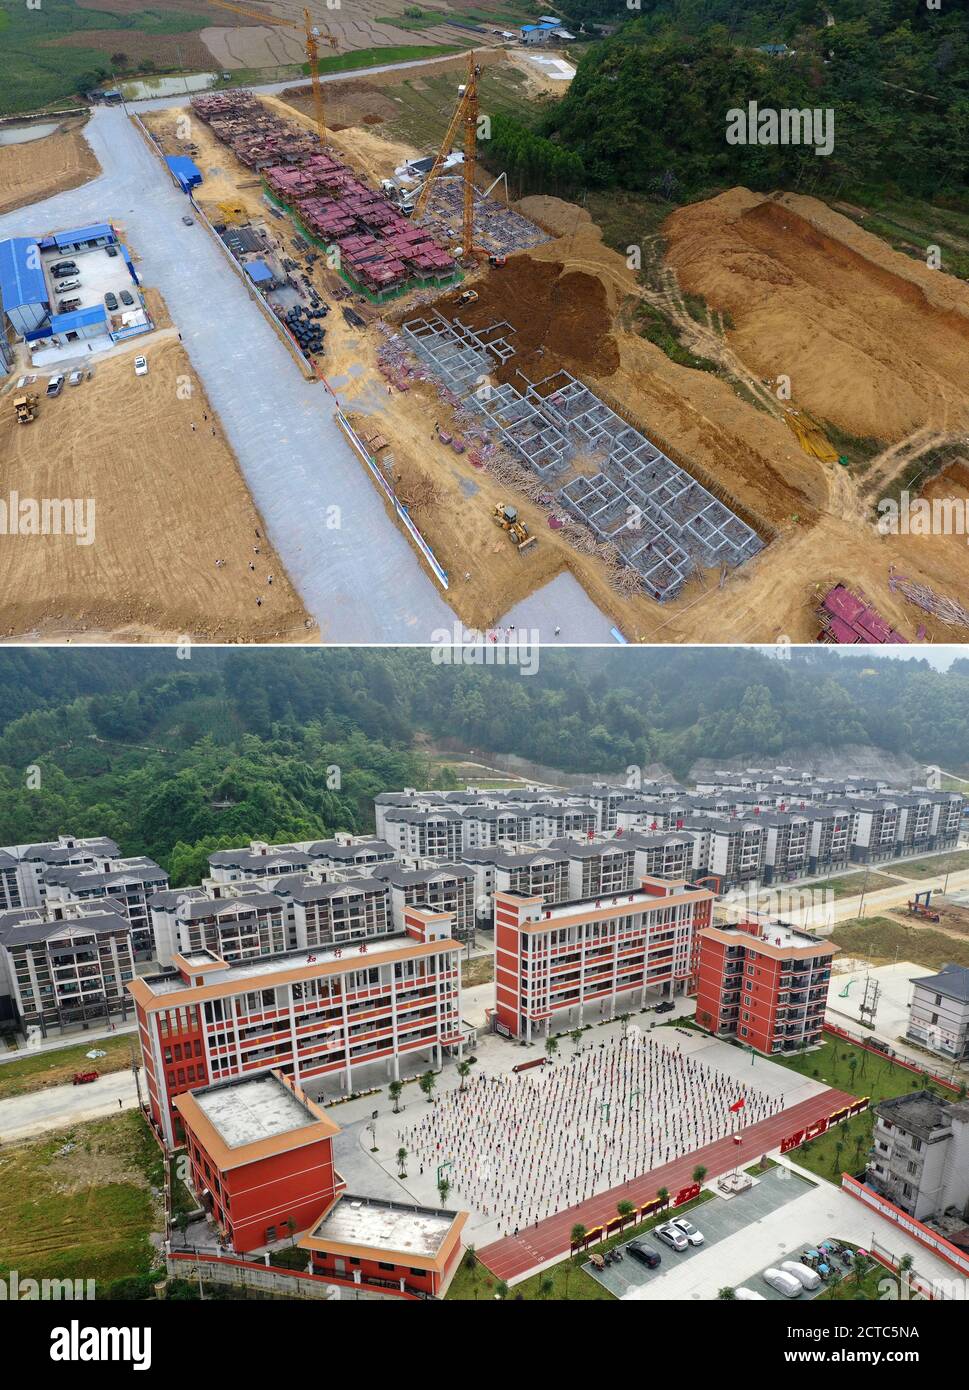 (200922) -- NANNING, 22 settembre 2020 (Xinhua) -- in questa foto combinata, la parte superiore scattata il 13 ottobre 2016 mostra una vista aerea di un sito di reinsediamento in via di sviluppo a Xia'ao Township e la parte inferiore scattata il 25 aprile, Il 2019 mostra una vista aerea del già costruito reinsediamento di aiuti alla povertà nella Township di Xia'ao della Contea Autonoma di Du'an Yao, regione Autonoma di Guangxi Zhuang, nella Cina meridionale. Negli ultimi cinque anni, la Regione Autonoma di Guangxi Zhuang ha condotto una serie di progetti di riduzione della povertà, come accelerare la costruzione di infrastrutture di trasporto in poo Foto Stock